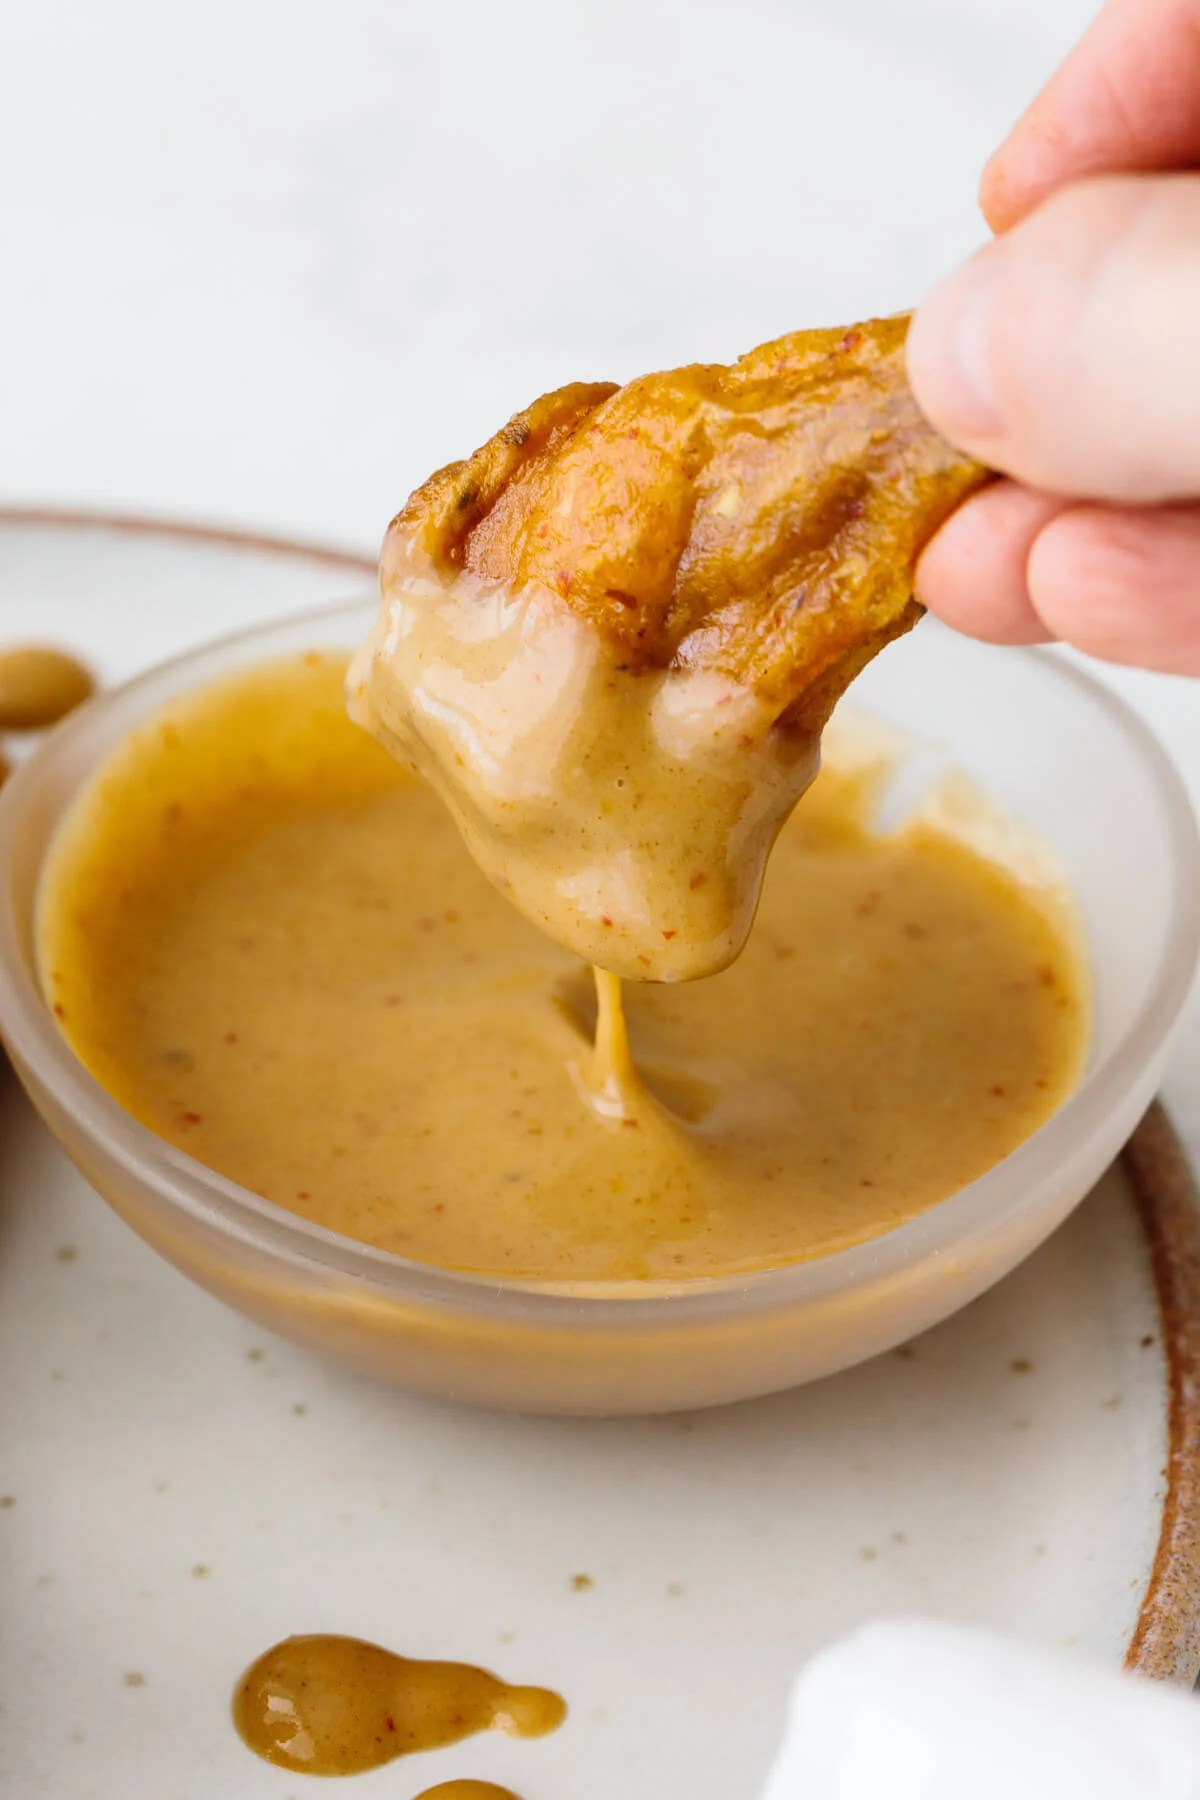 Honey mustard chicken wing dipping into honey mustard sauce.